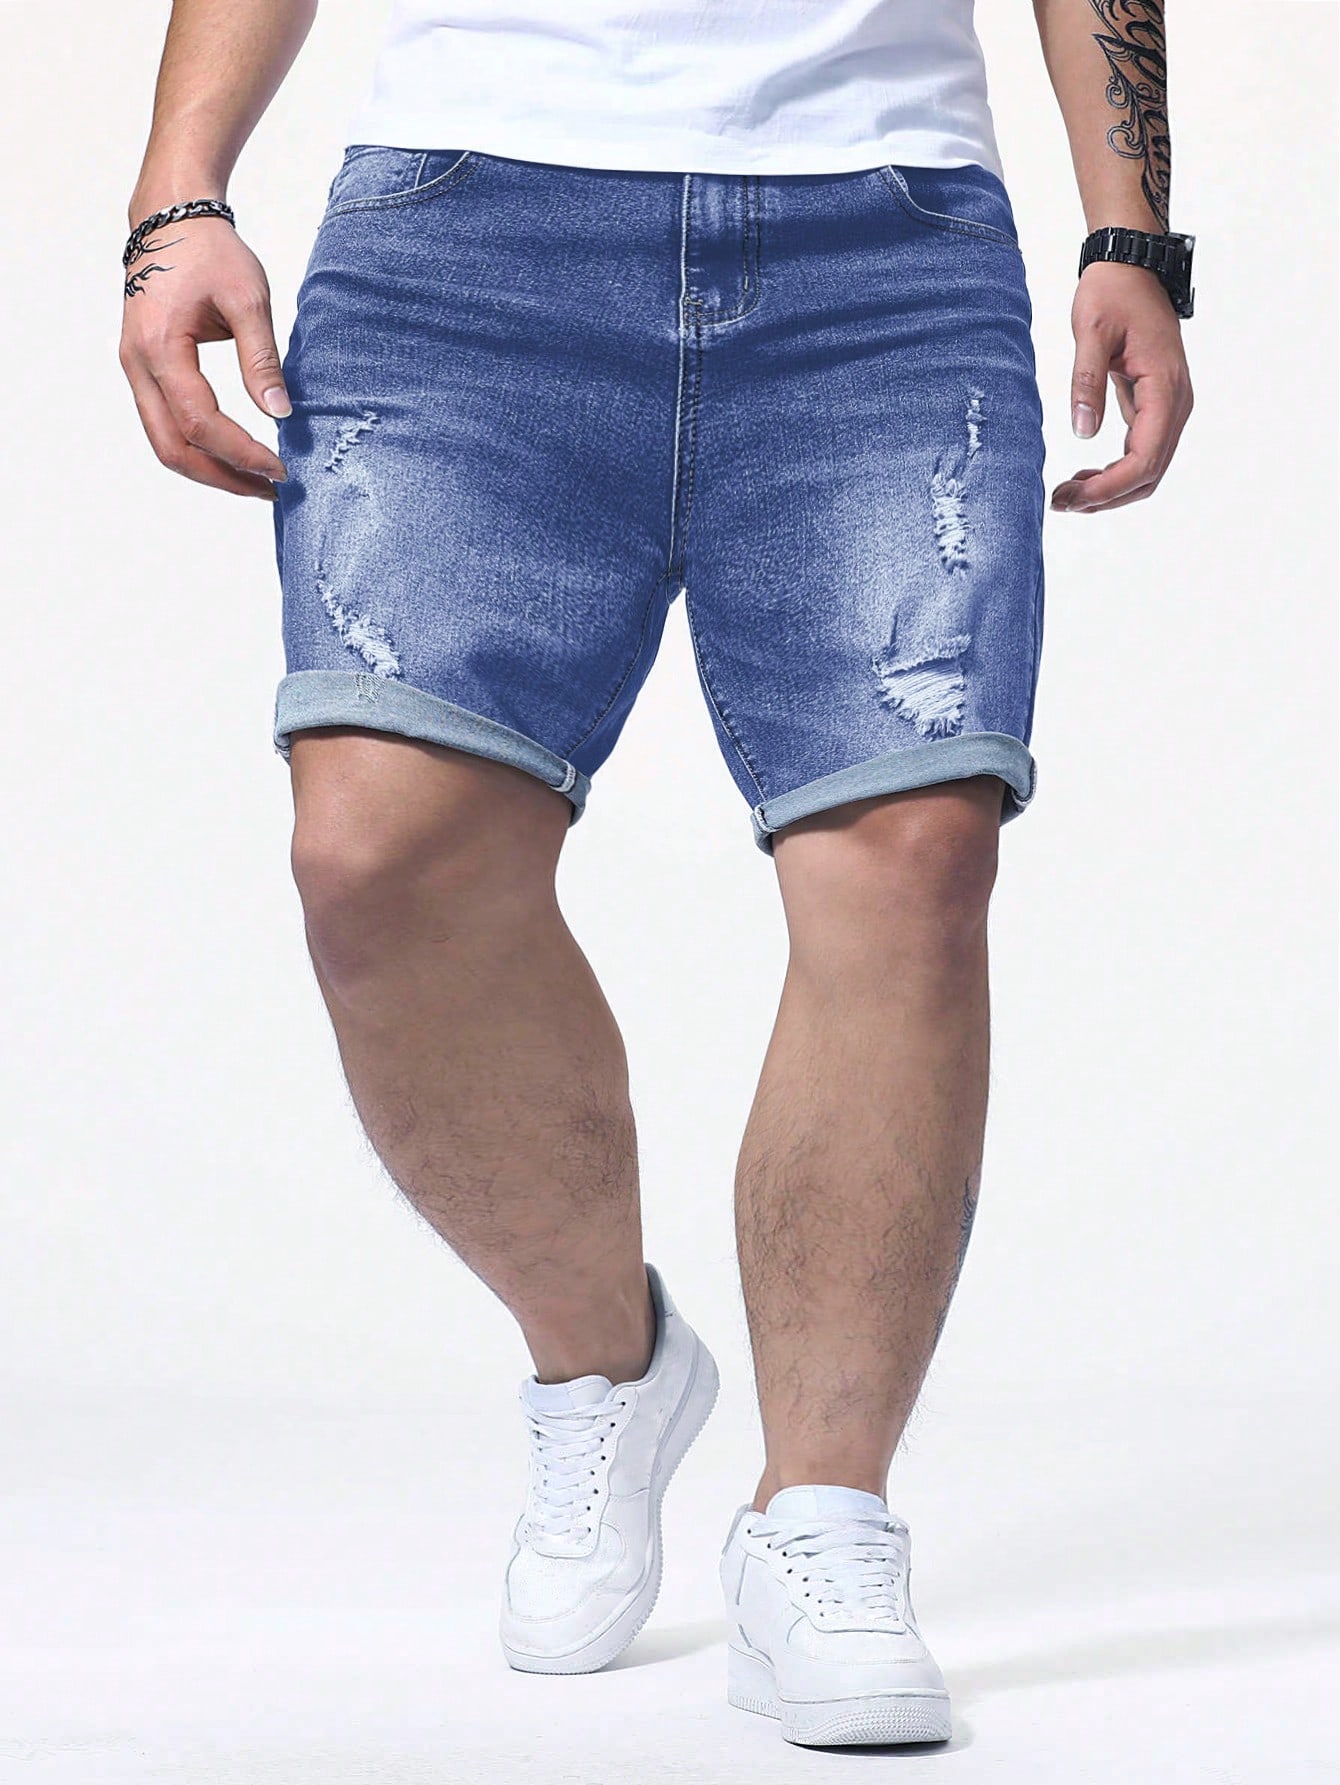 Мужские потертые джинсовые шорты Manfinity EMRG больших размеров, средняя стирка